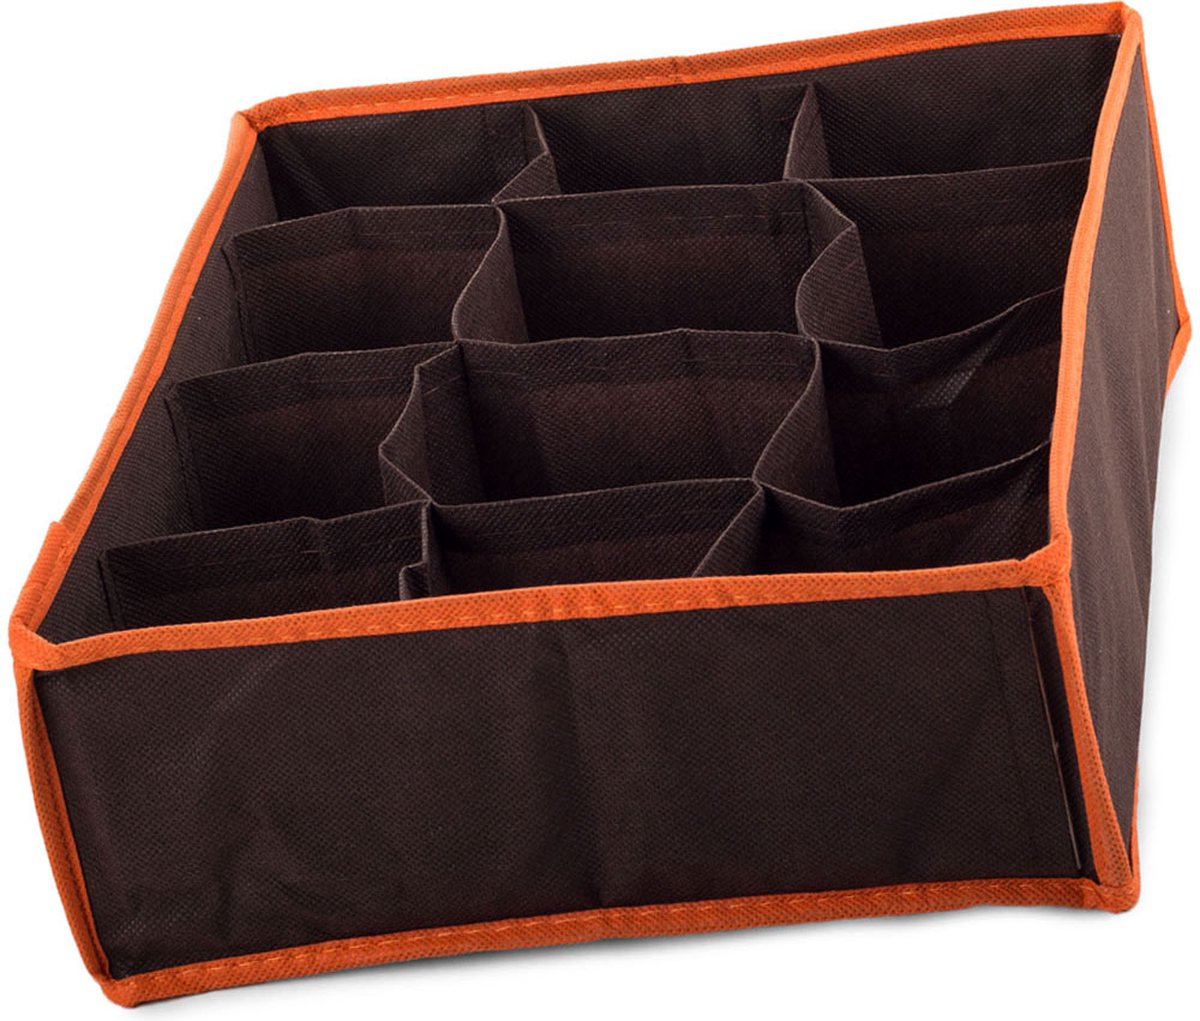 2X Organizer voor ondergoed en sokken lades - 12 Vaks - Bruin/Oranje - Materiaal linnen - Goed luchtdoorlatend - 30cm x 24cm x 10cm